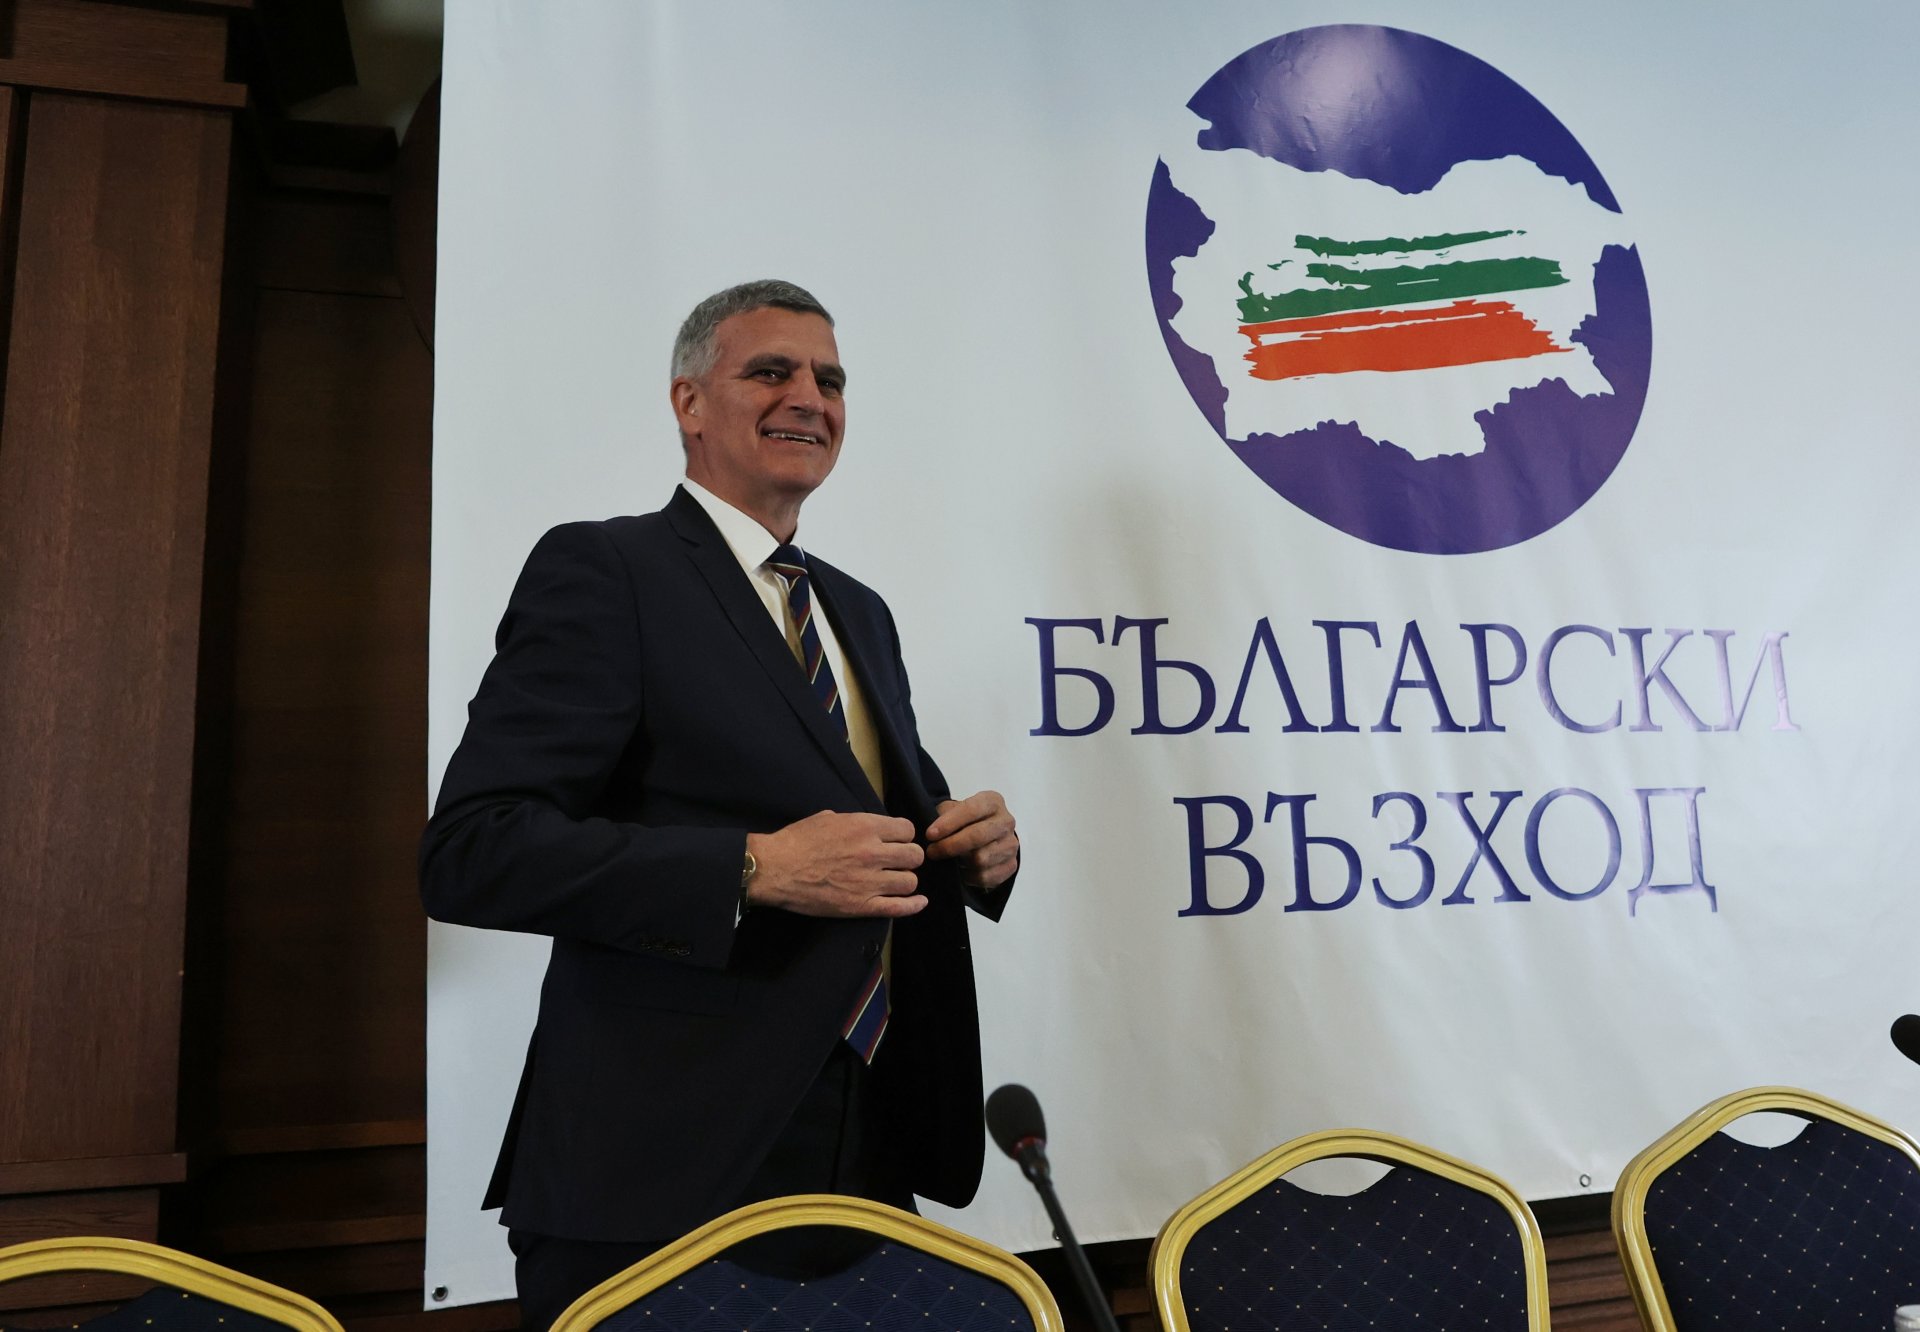 Бъдещата партия избра за лого националния флаг върху картата на България